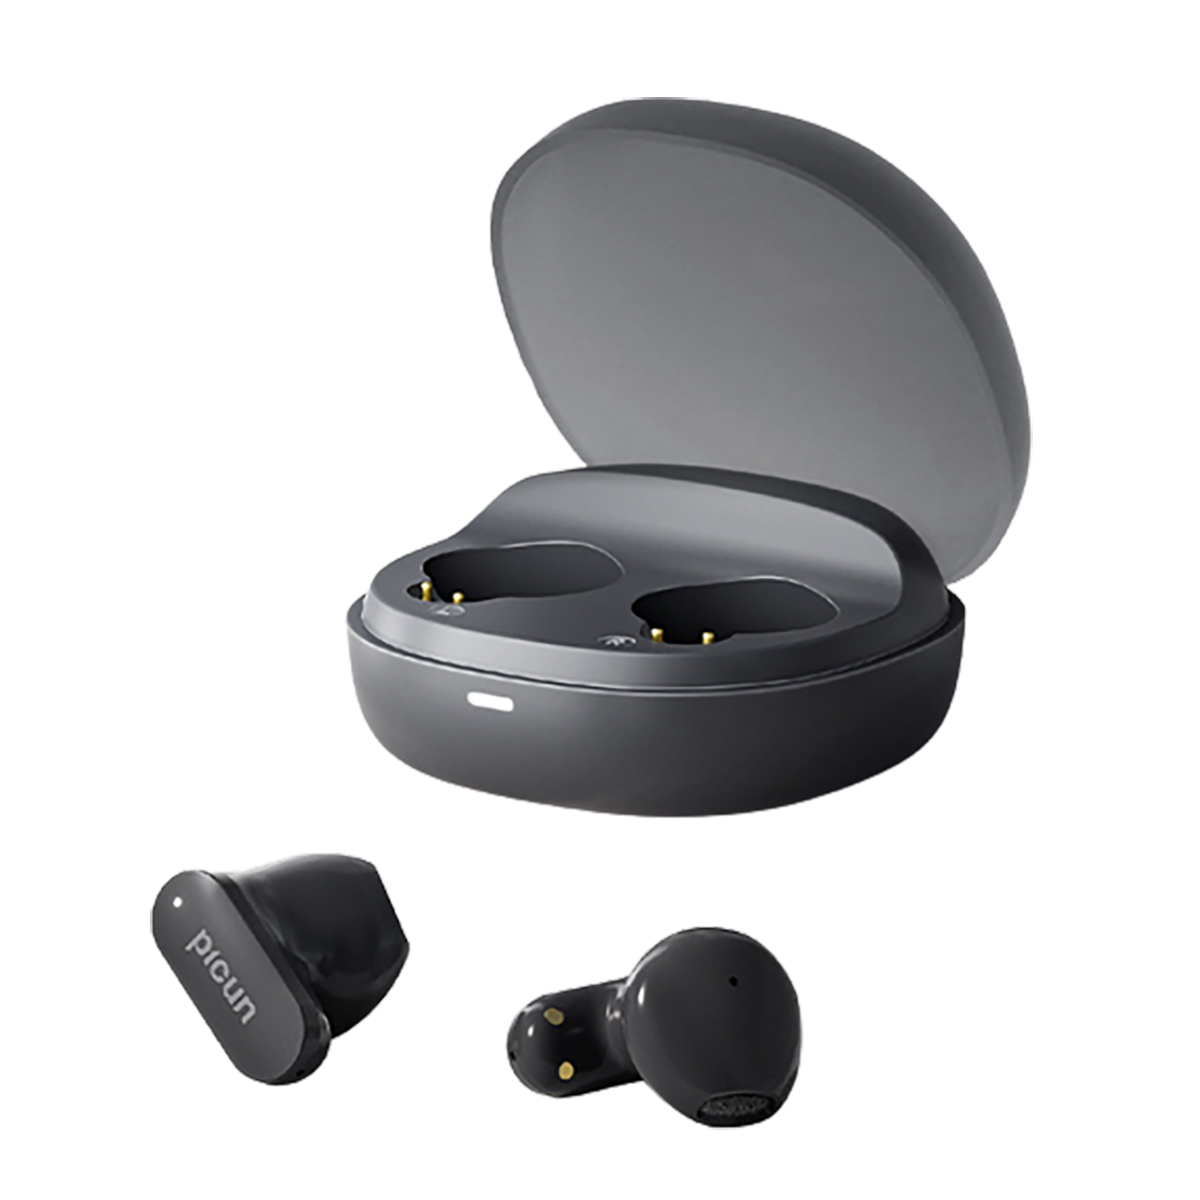 Bluetooth-Kopfhörer In-ear Sport schwarz Bluetooth-Headset halb lange Ohr Lebensdauer BYTELIKE im Bluetooth Headset, wasserdicht Drahtloses